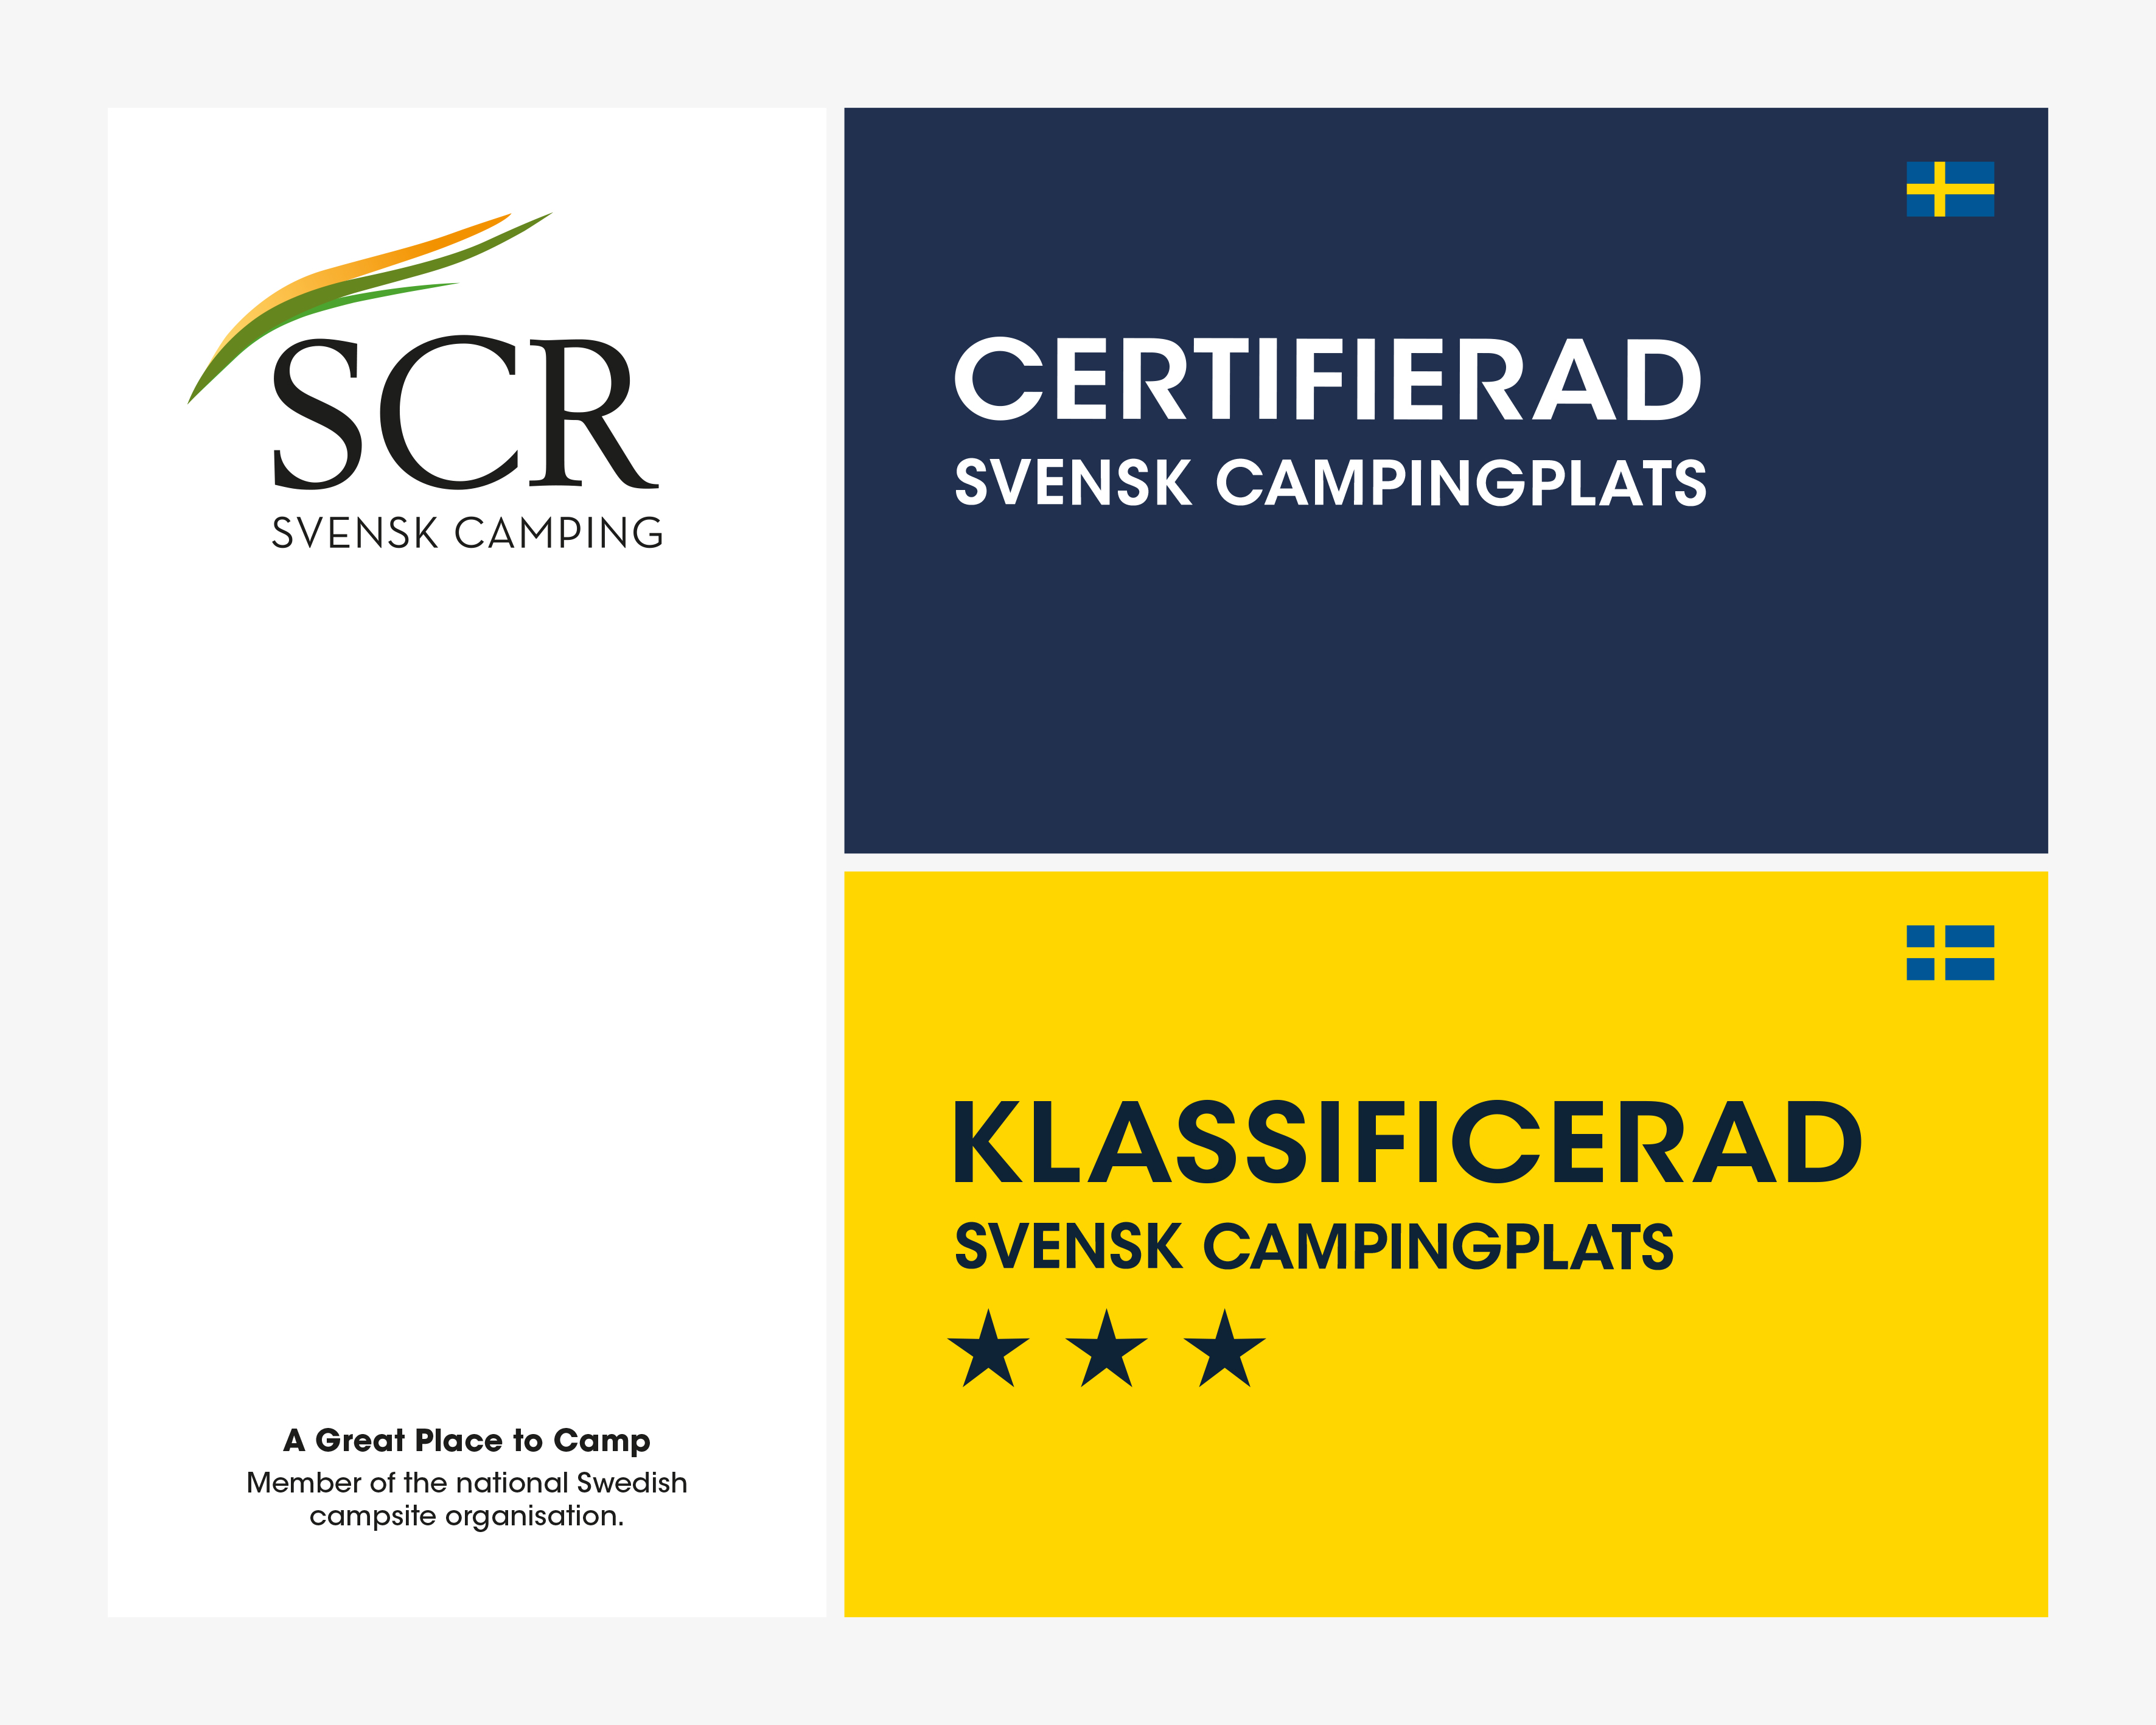 skylt-scr-certifierad+klassificerad.jpg